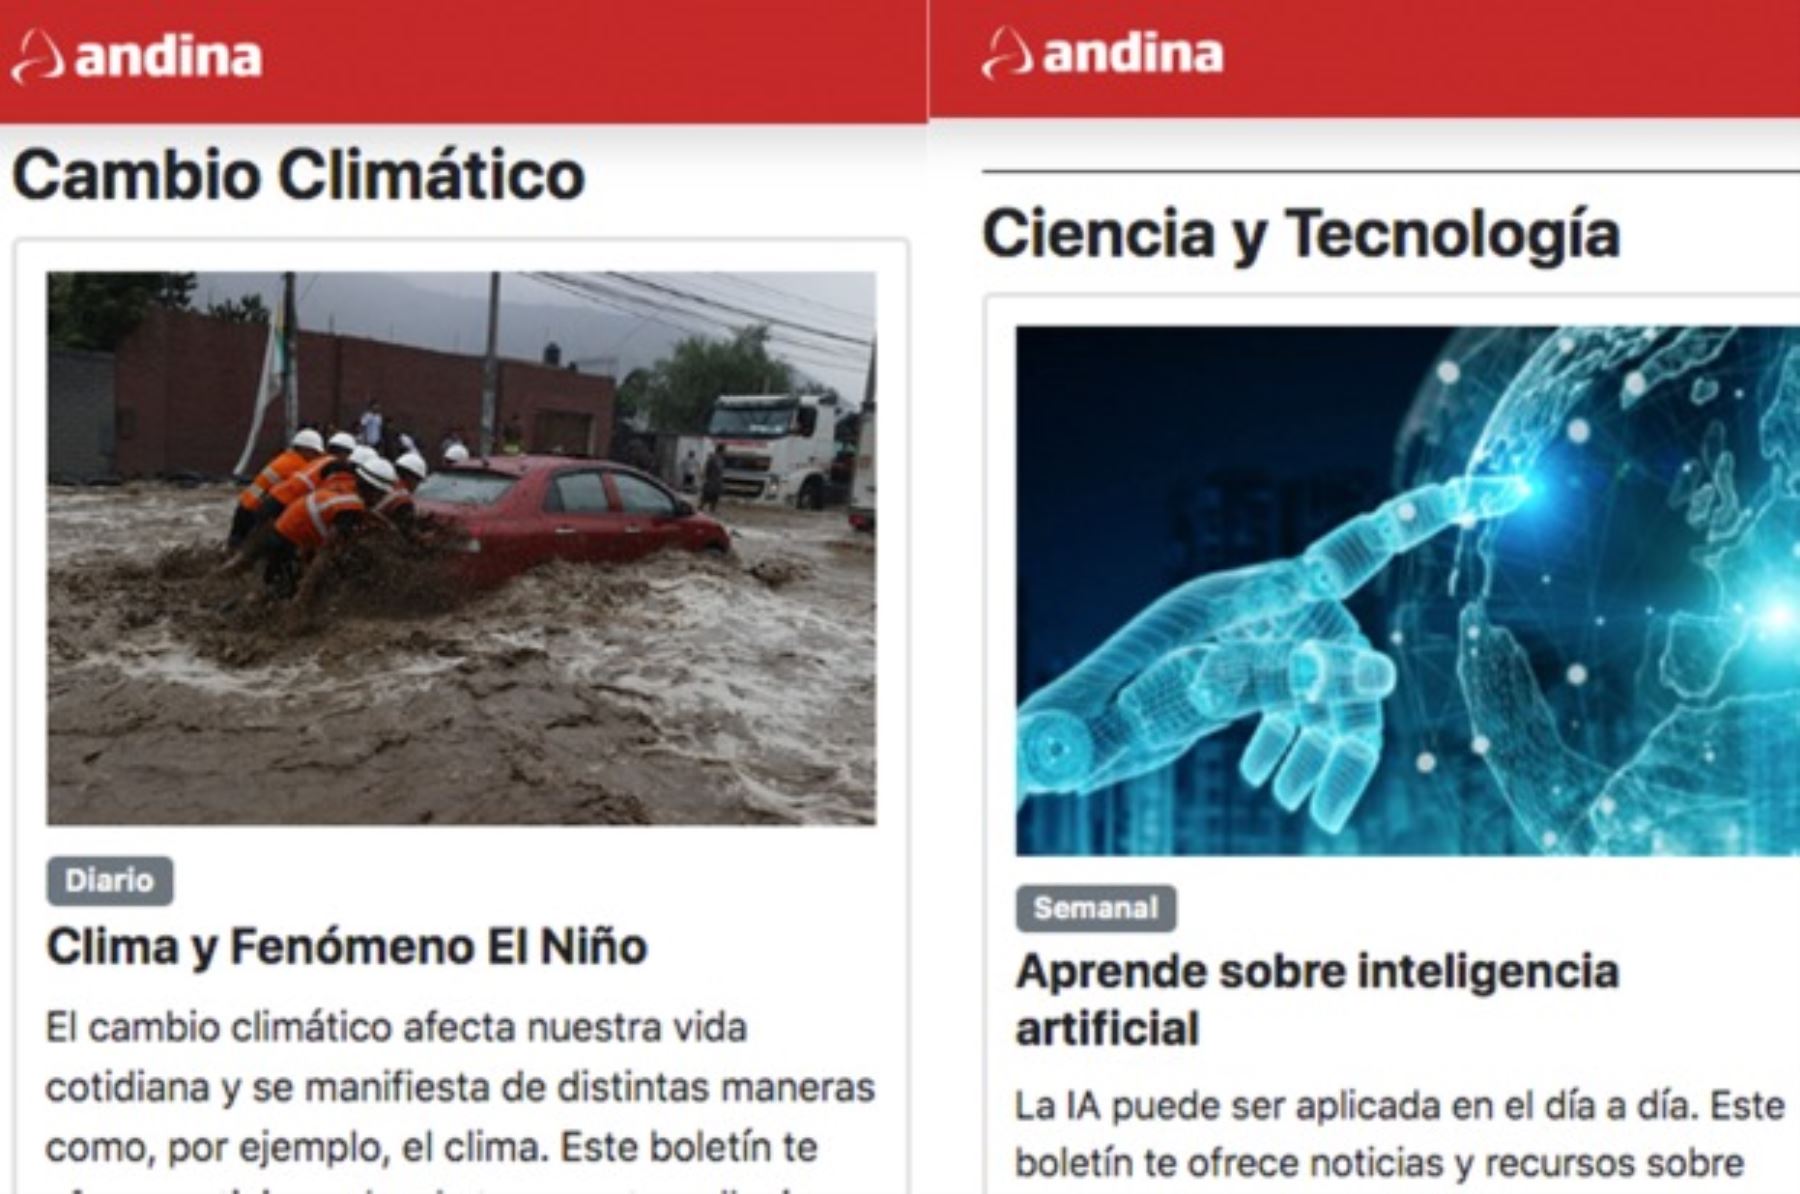 Agencia Andina estrena nuevos newsletters (boletines informativos) sobre inteligencia artificial, precio del dólar y becas para formación profesional.